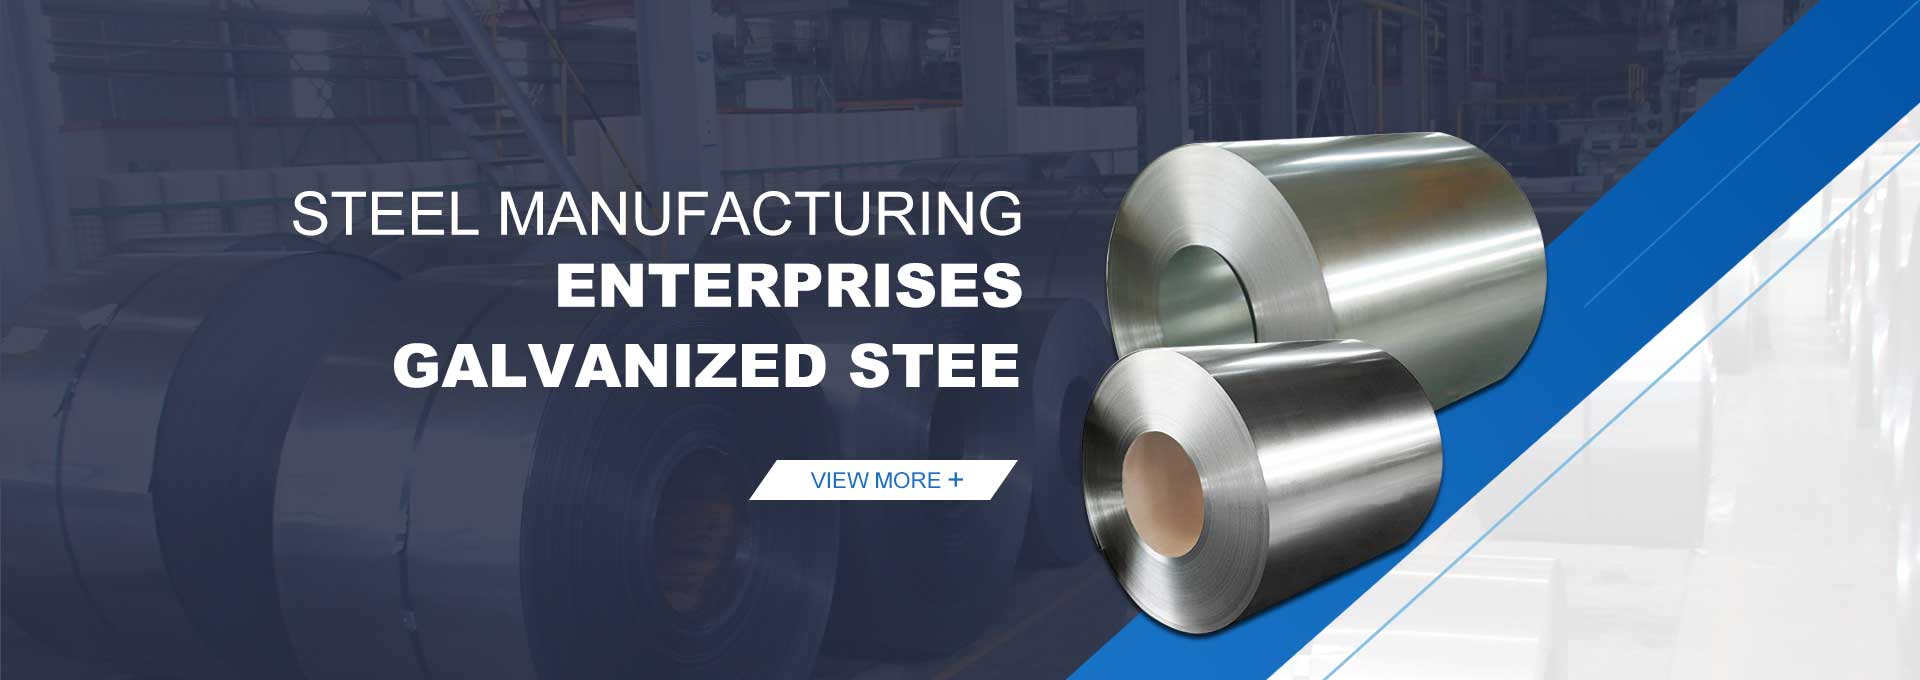 Galvanized Steel Manufacturers